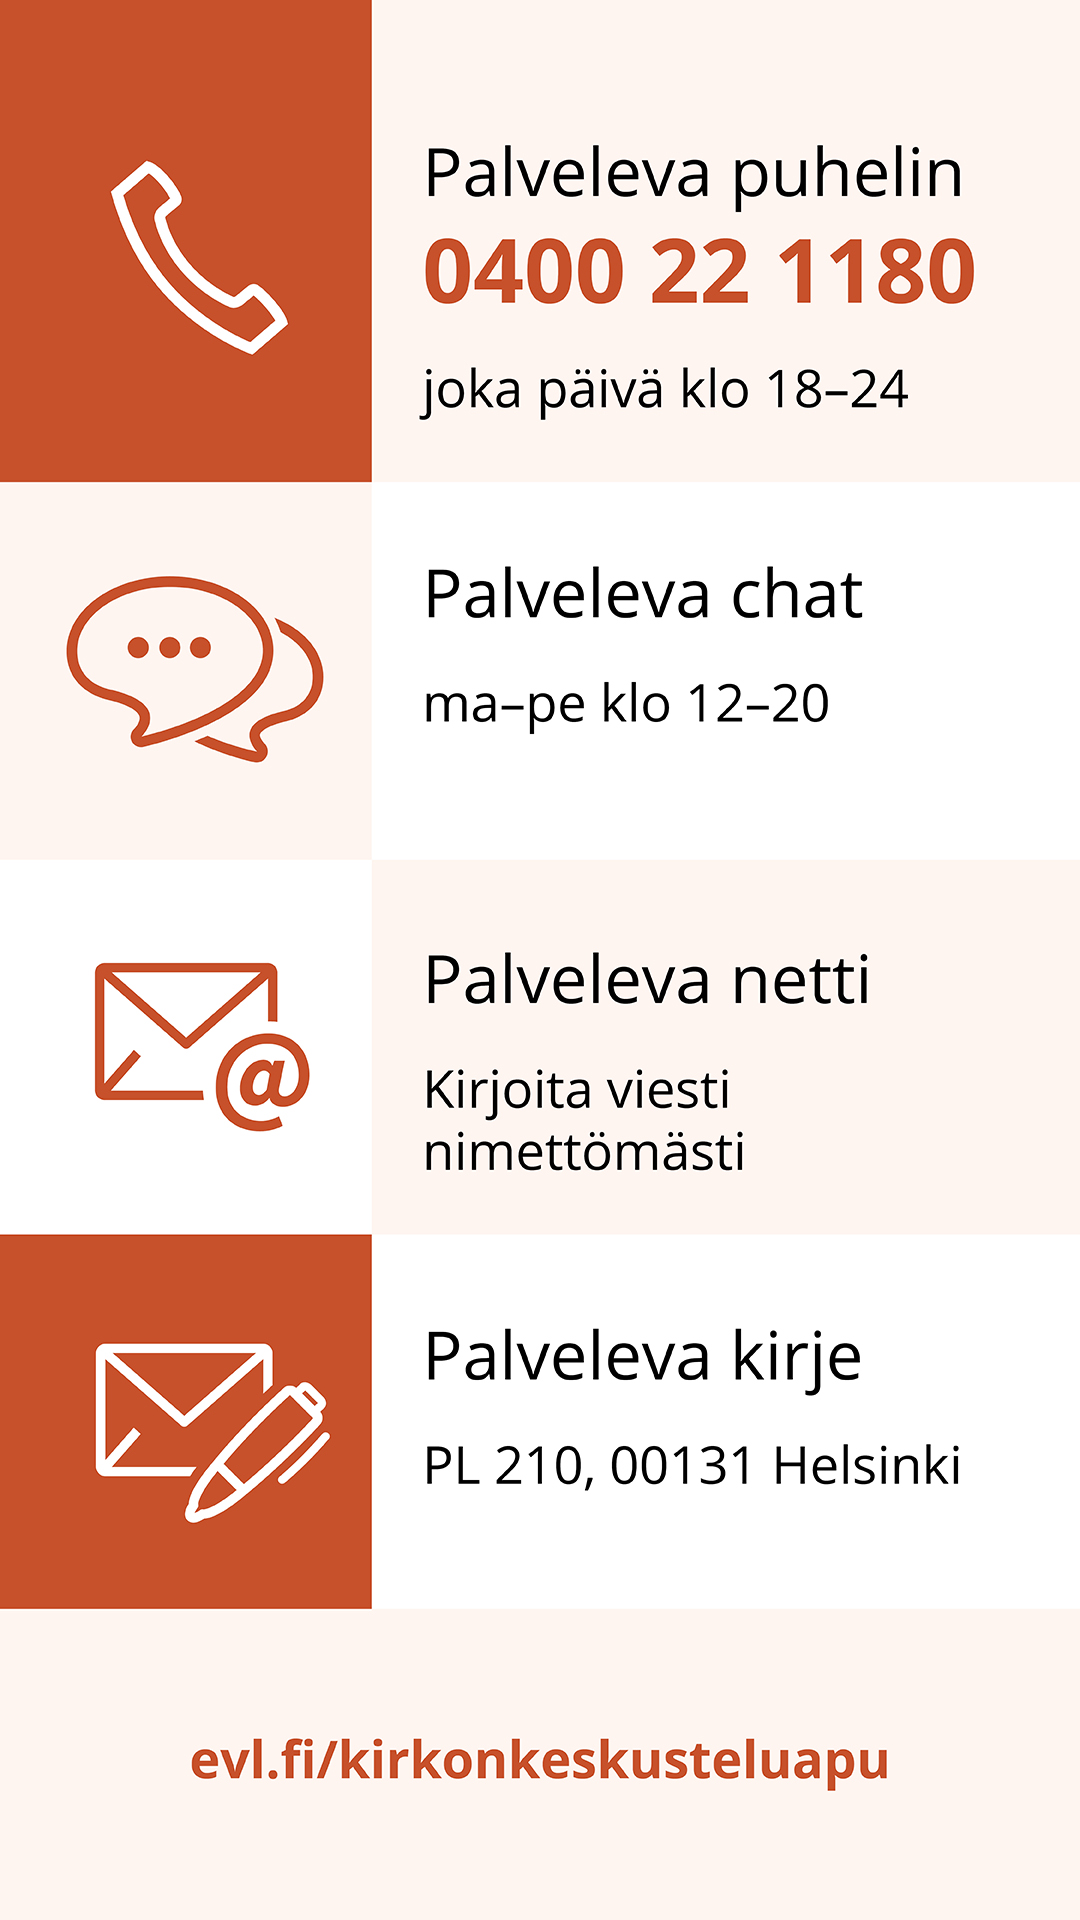 Kirkon keskusteluavun tiedot Palvelevasta puhelimesta, chatista ja netistä, evl.fi/kirkonkeskusteluapu